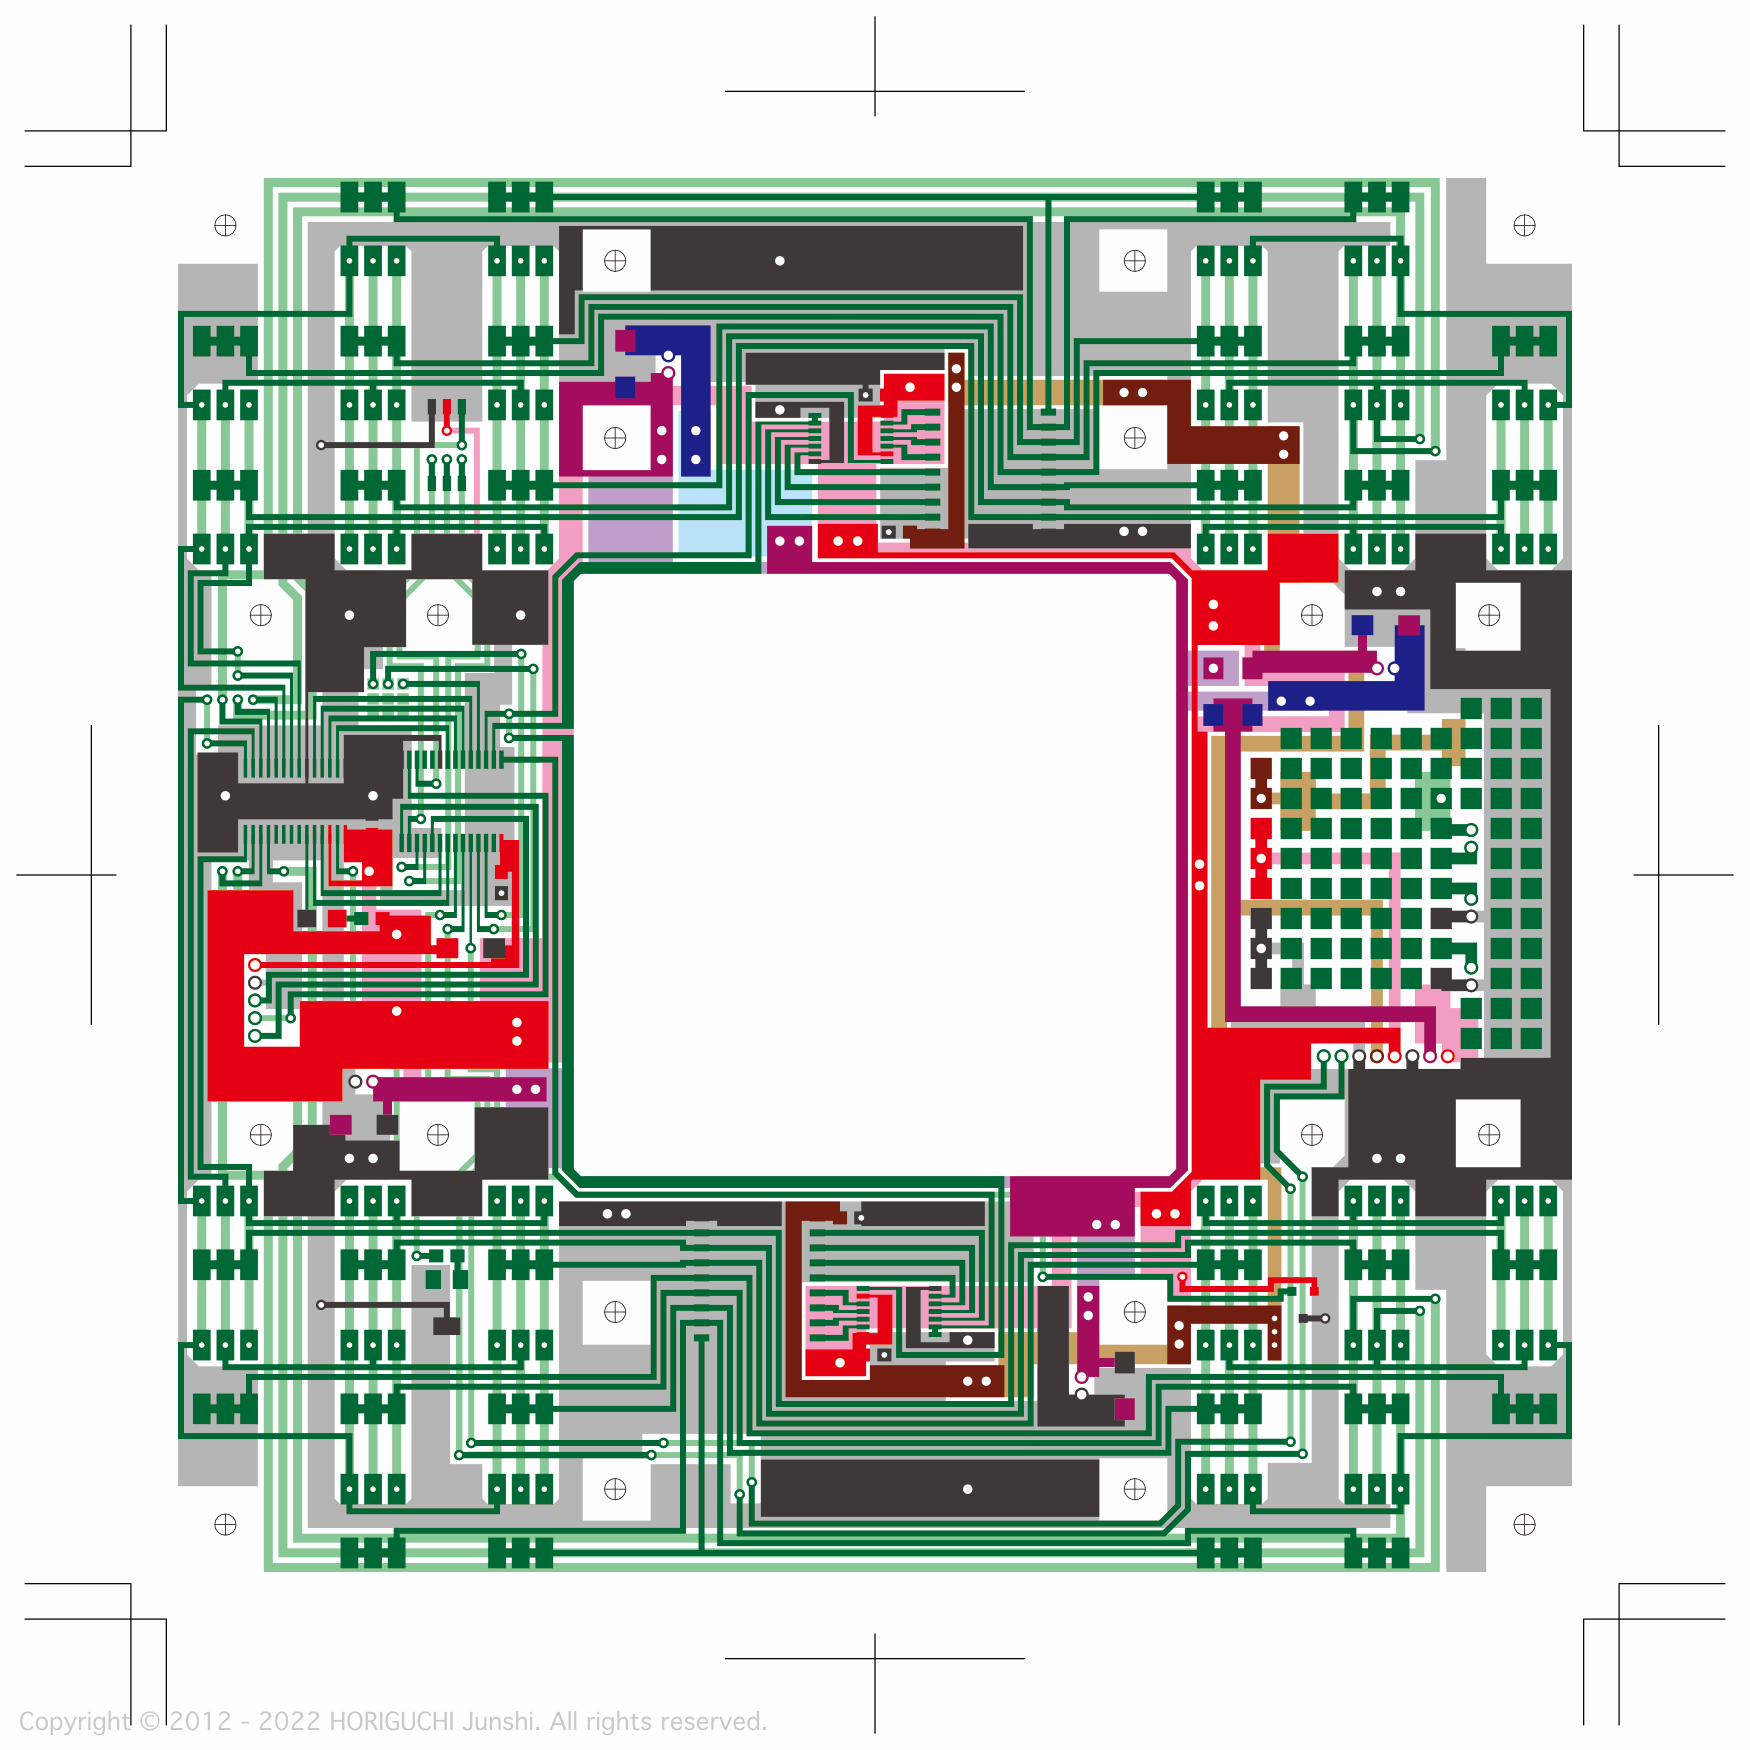 Control + 9V unit PCB design